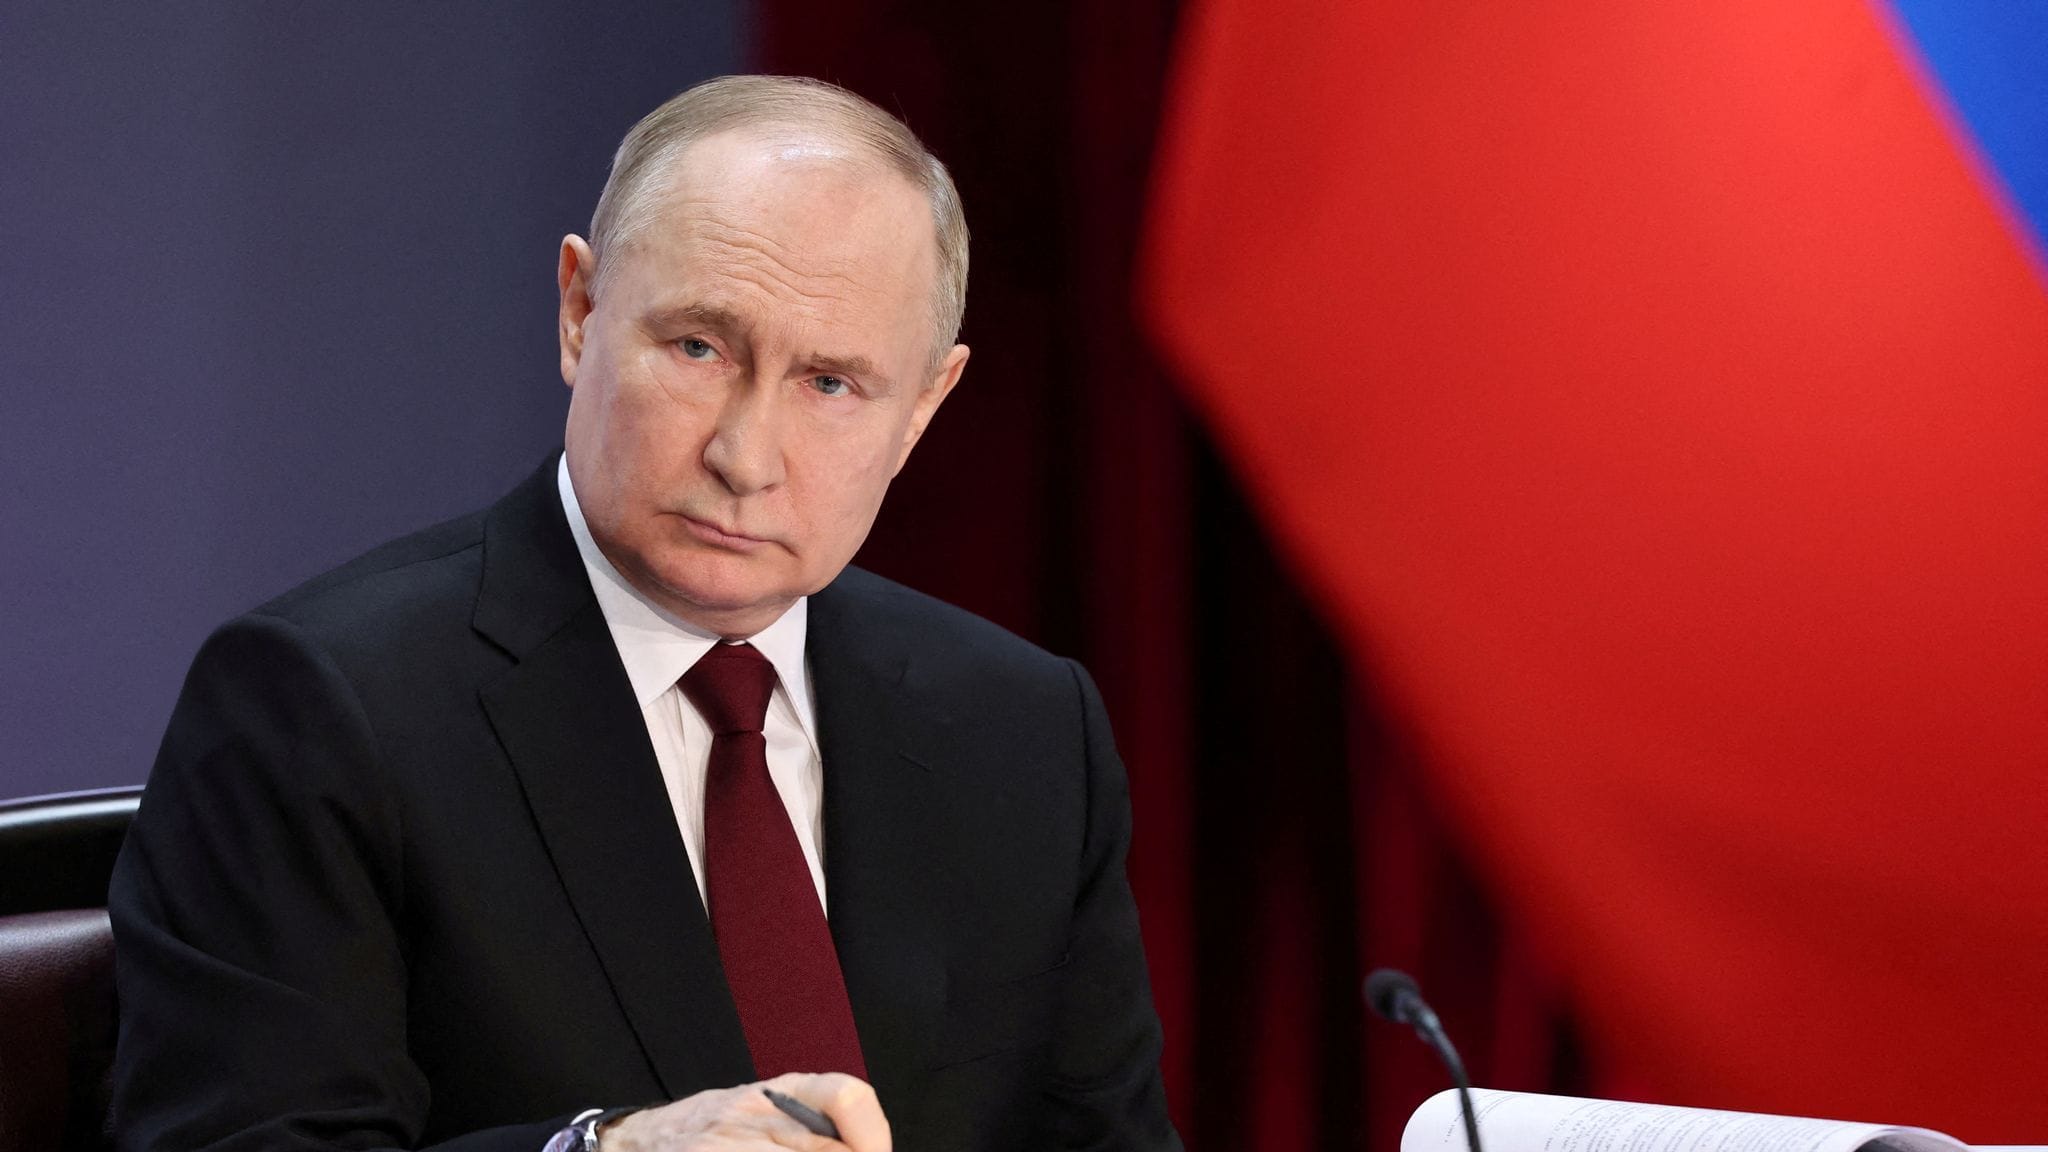 Putin ernennt Bekannte als Oberste Richterin: Korruption in Russland